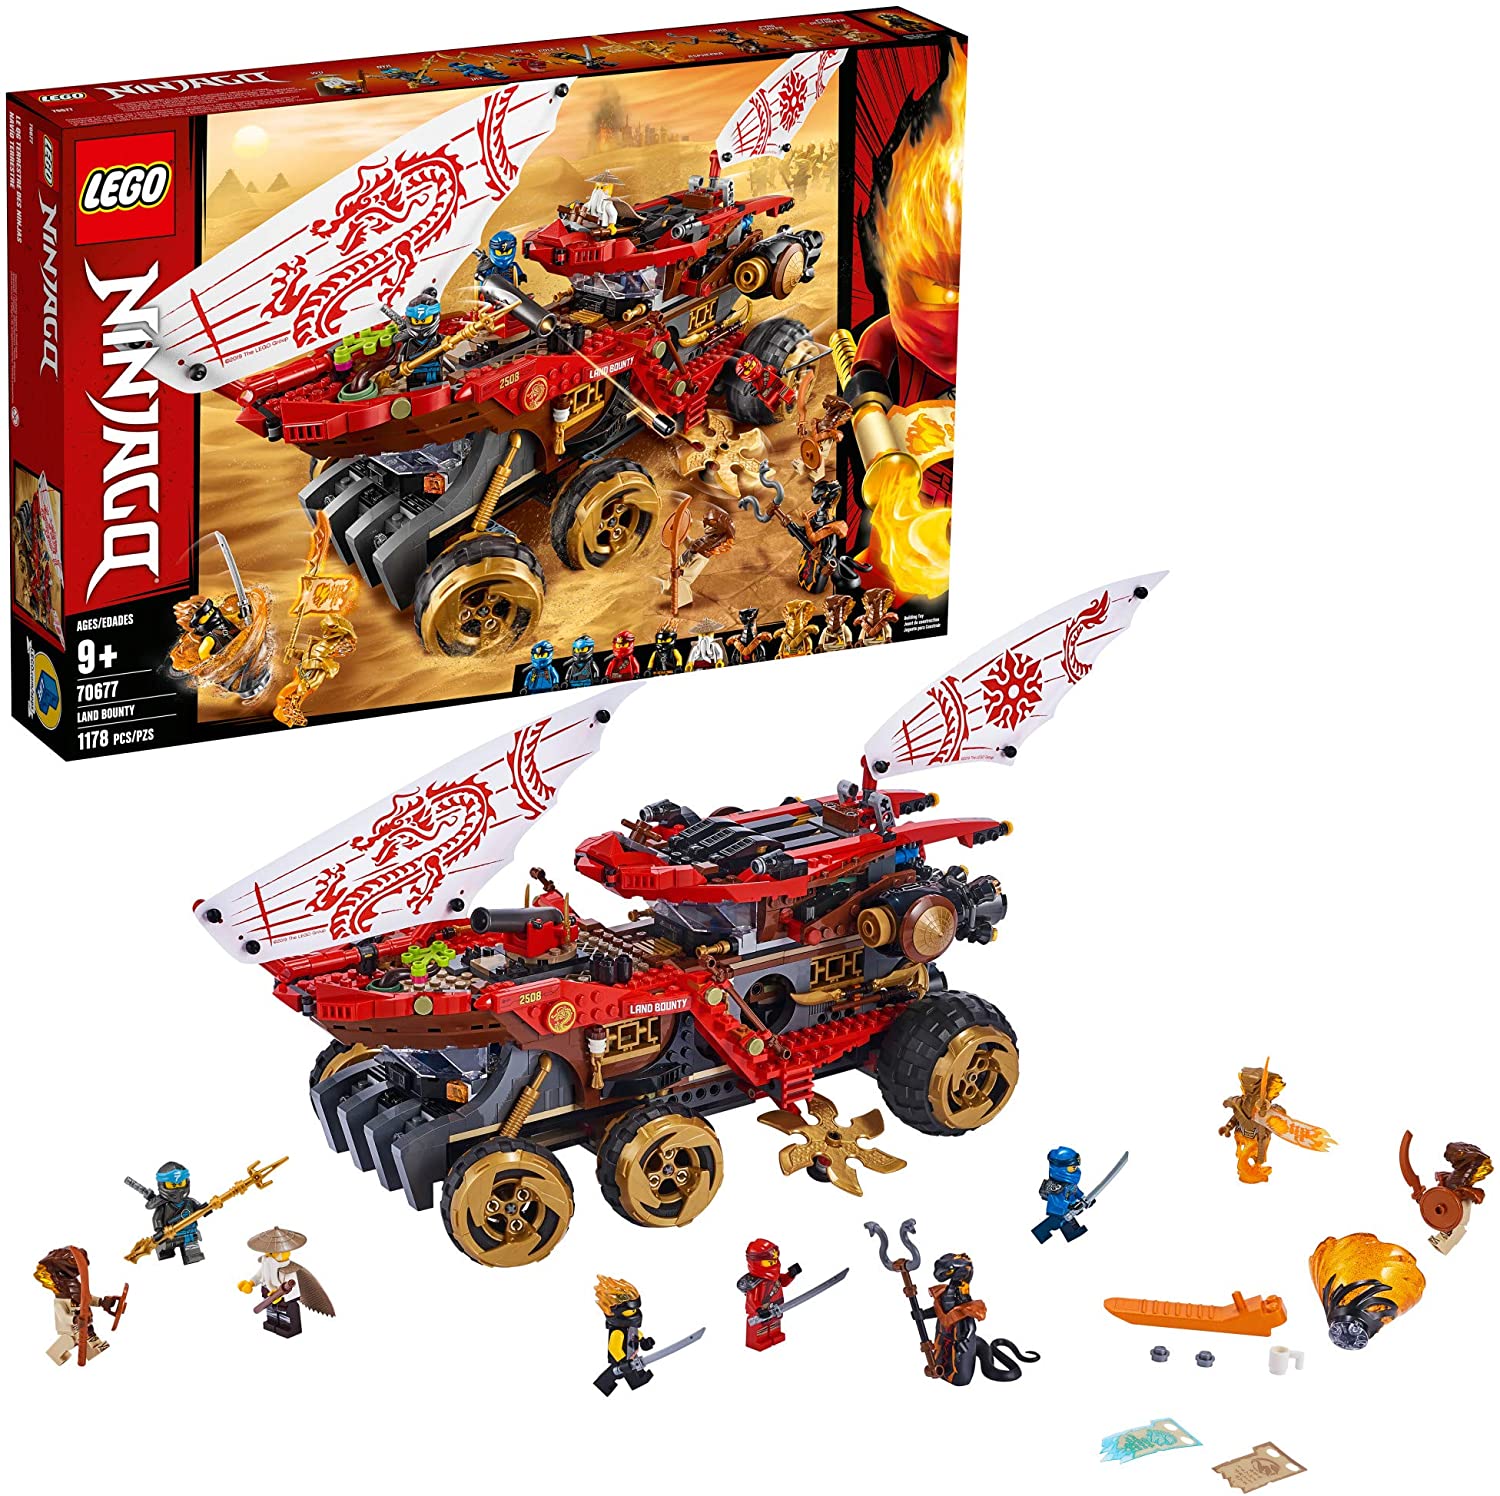 LEGO NINJAGO Weaponized Land Bounty Truck Building Set, 1,178-Piece